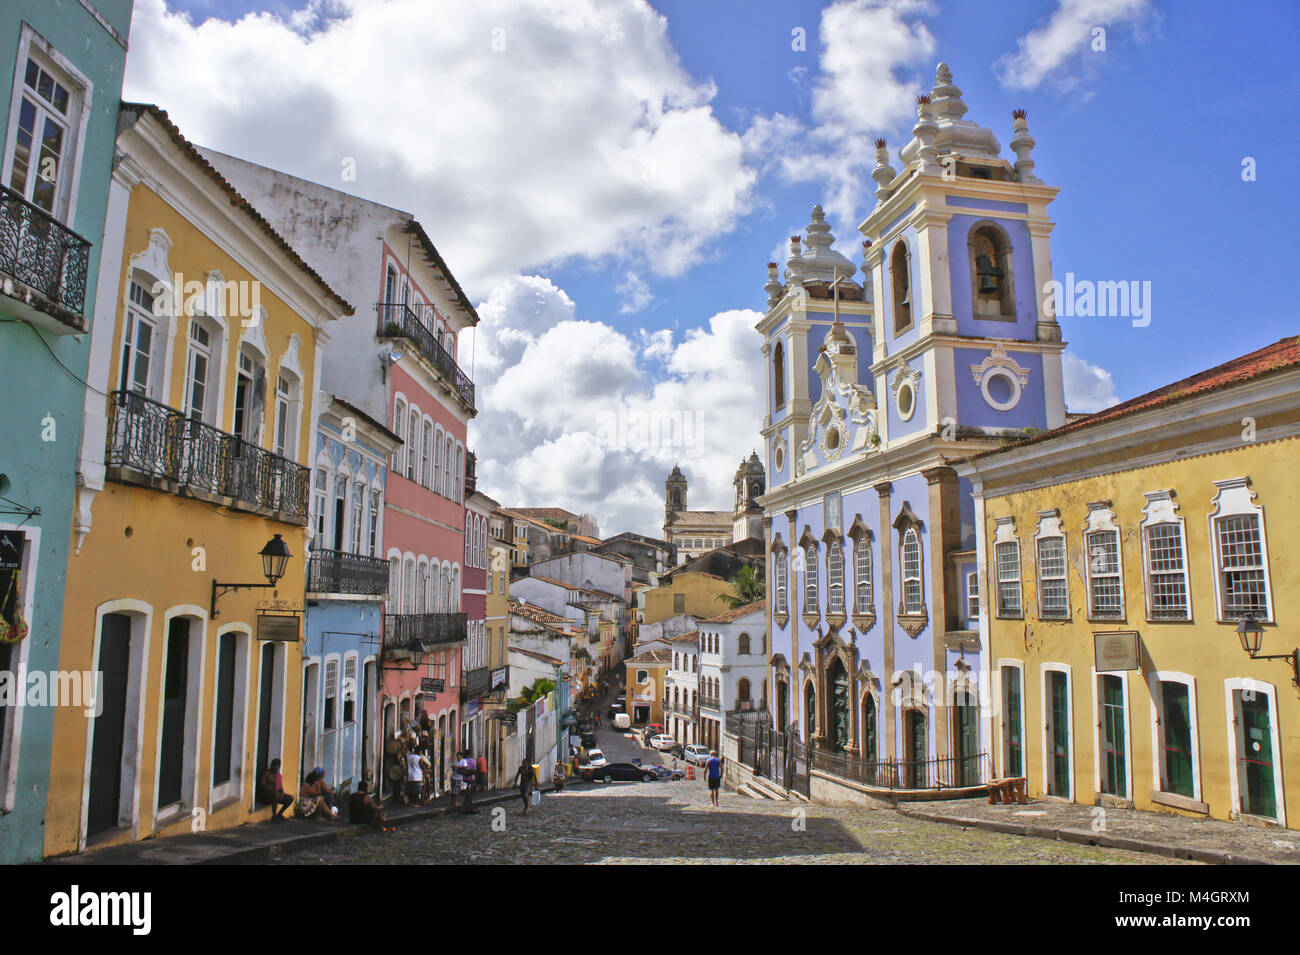 Salvador de Bahia, Pelourinho street view, Brazil Stock Photo